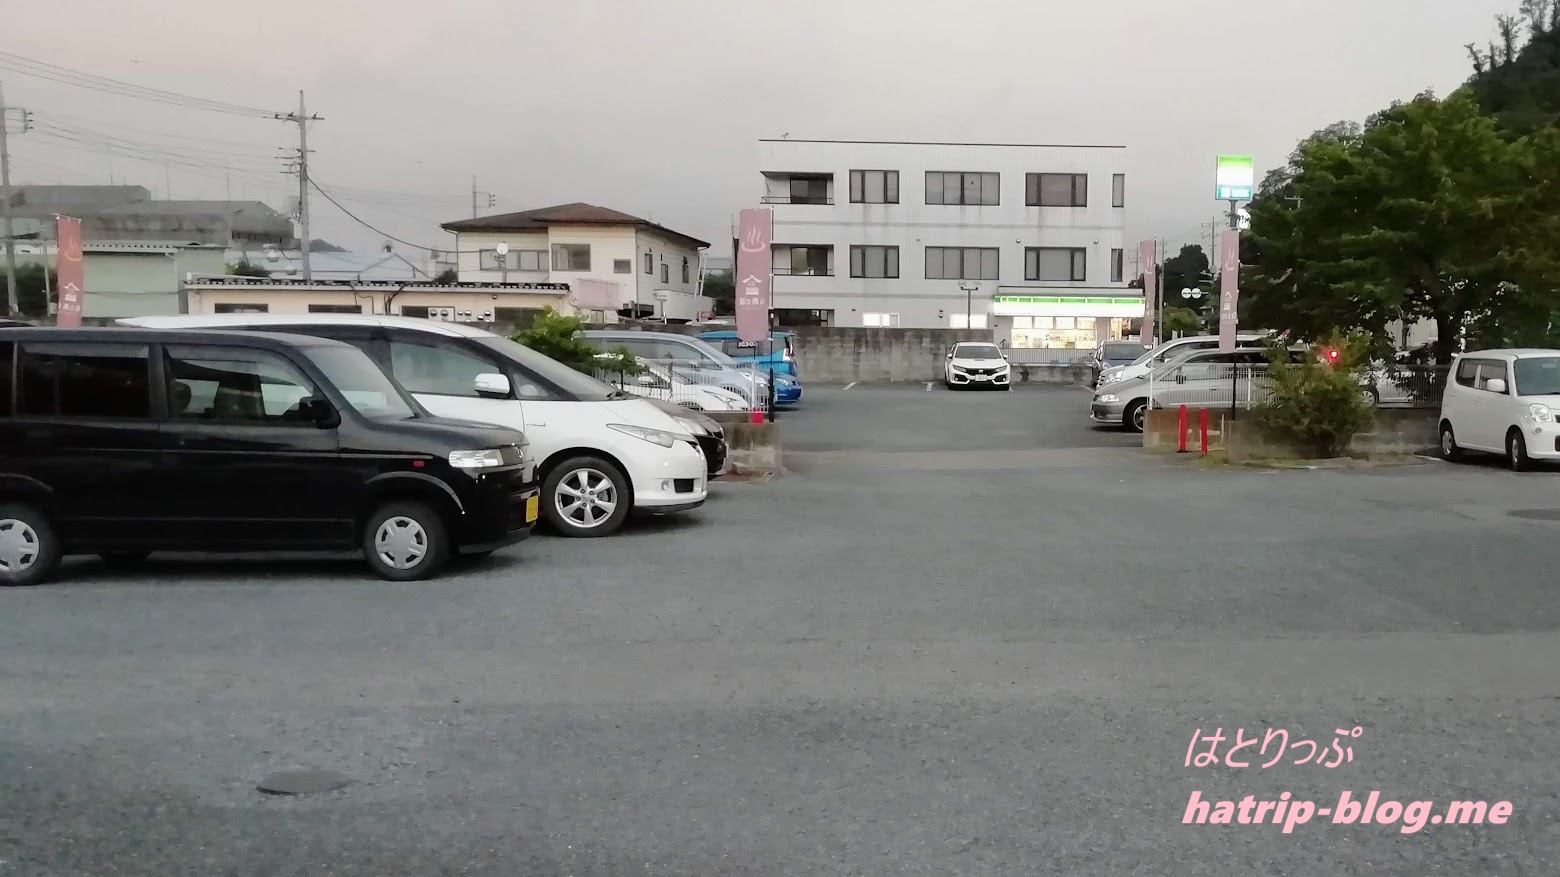 埼玉県児玉郡 おふろcafe 白寿の湯 駐車場